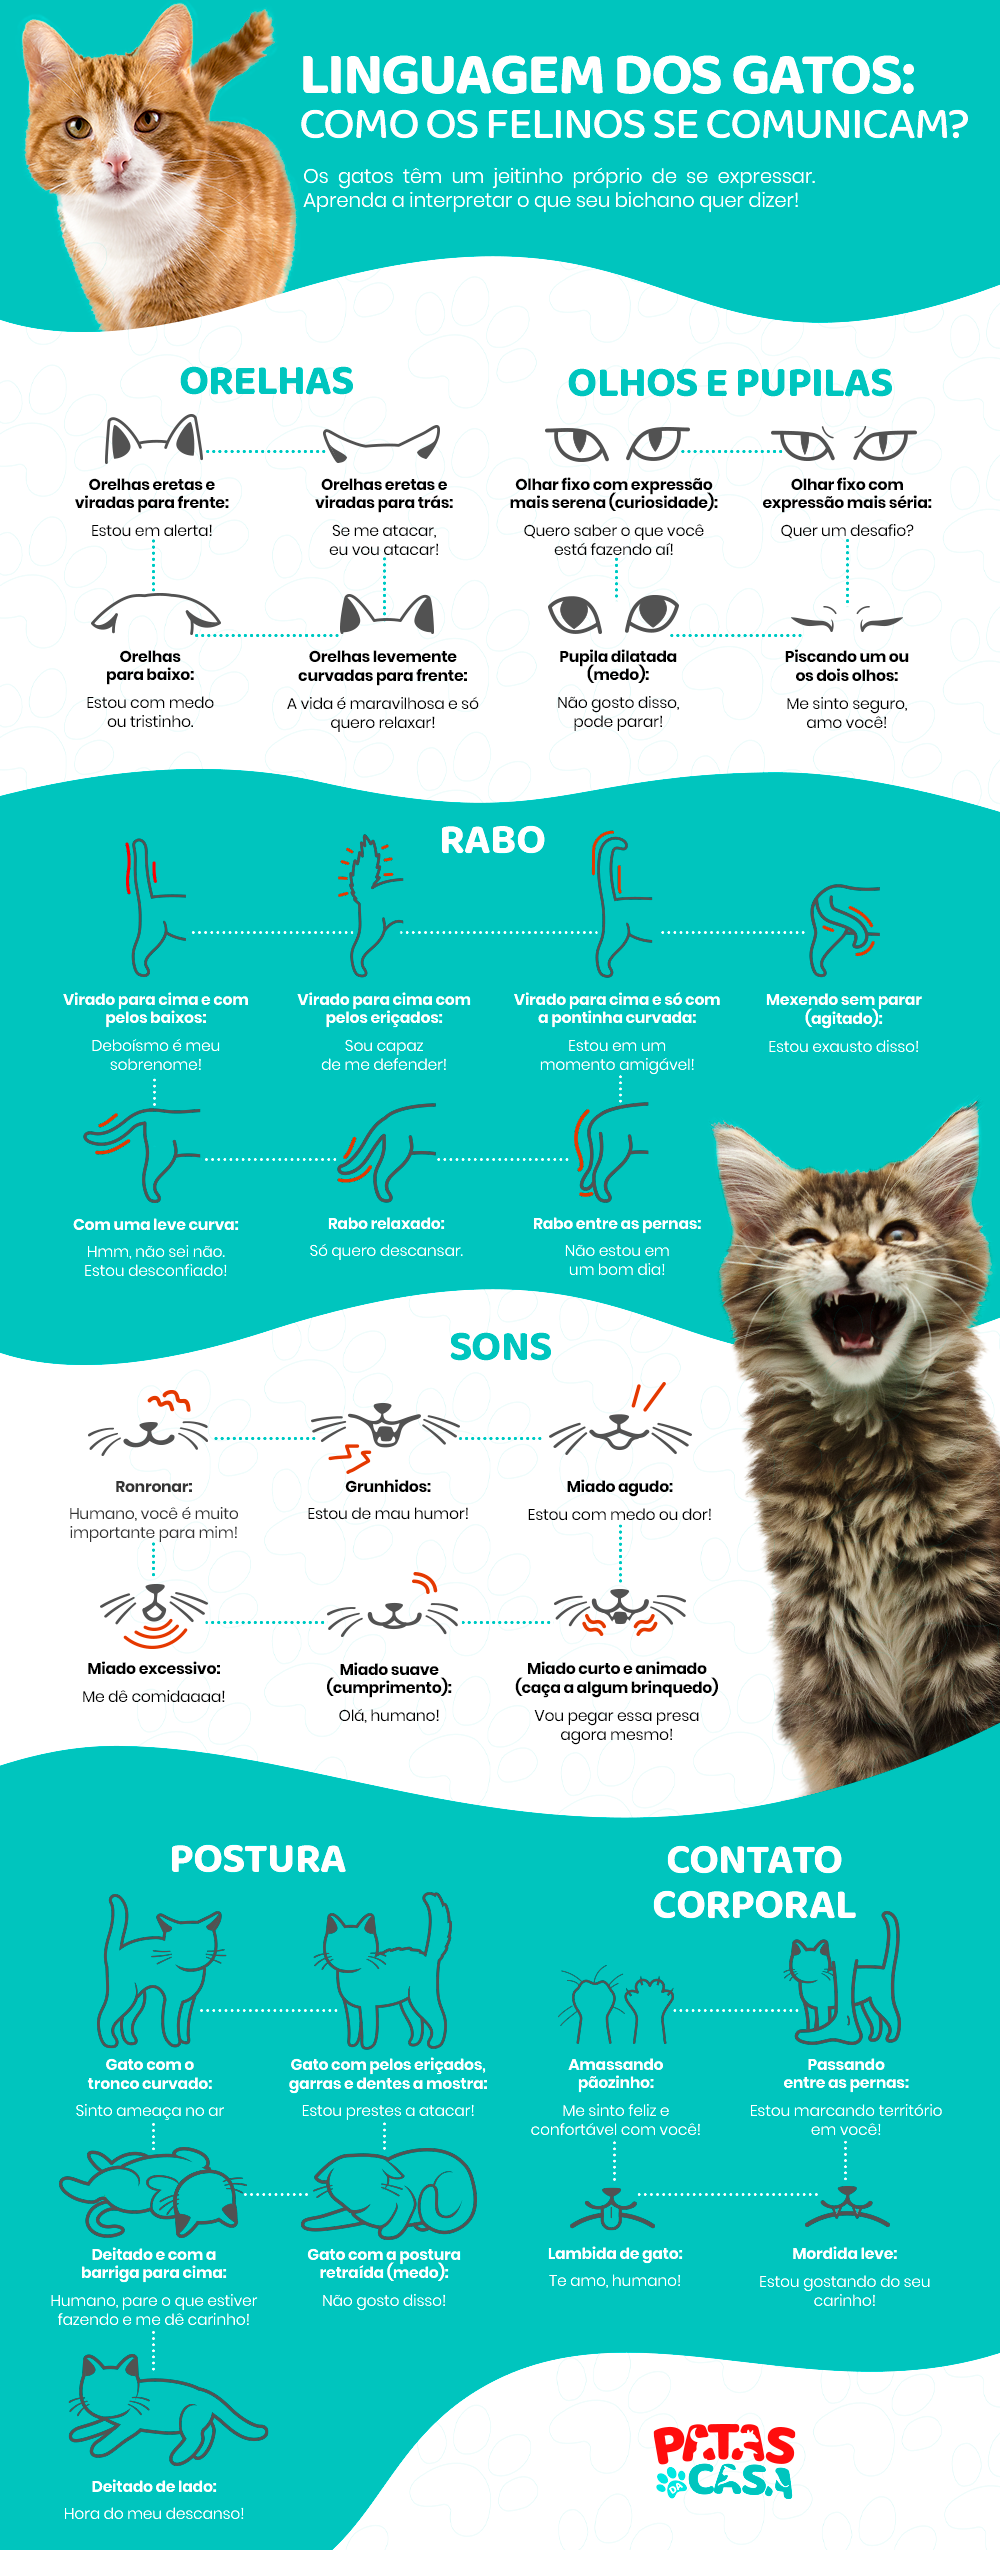 Infográfico detalhando a linguagem dos gatos